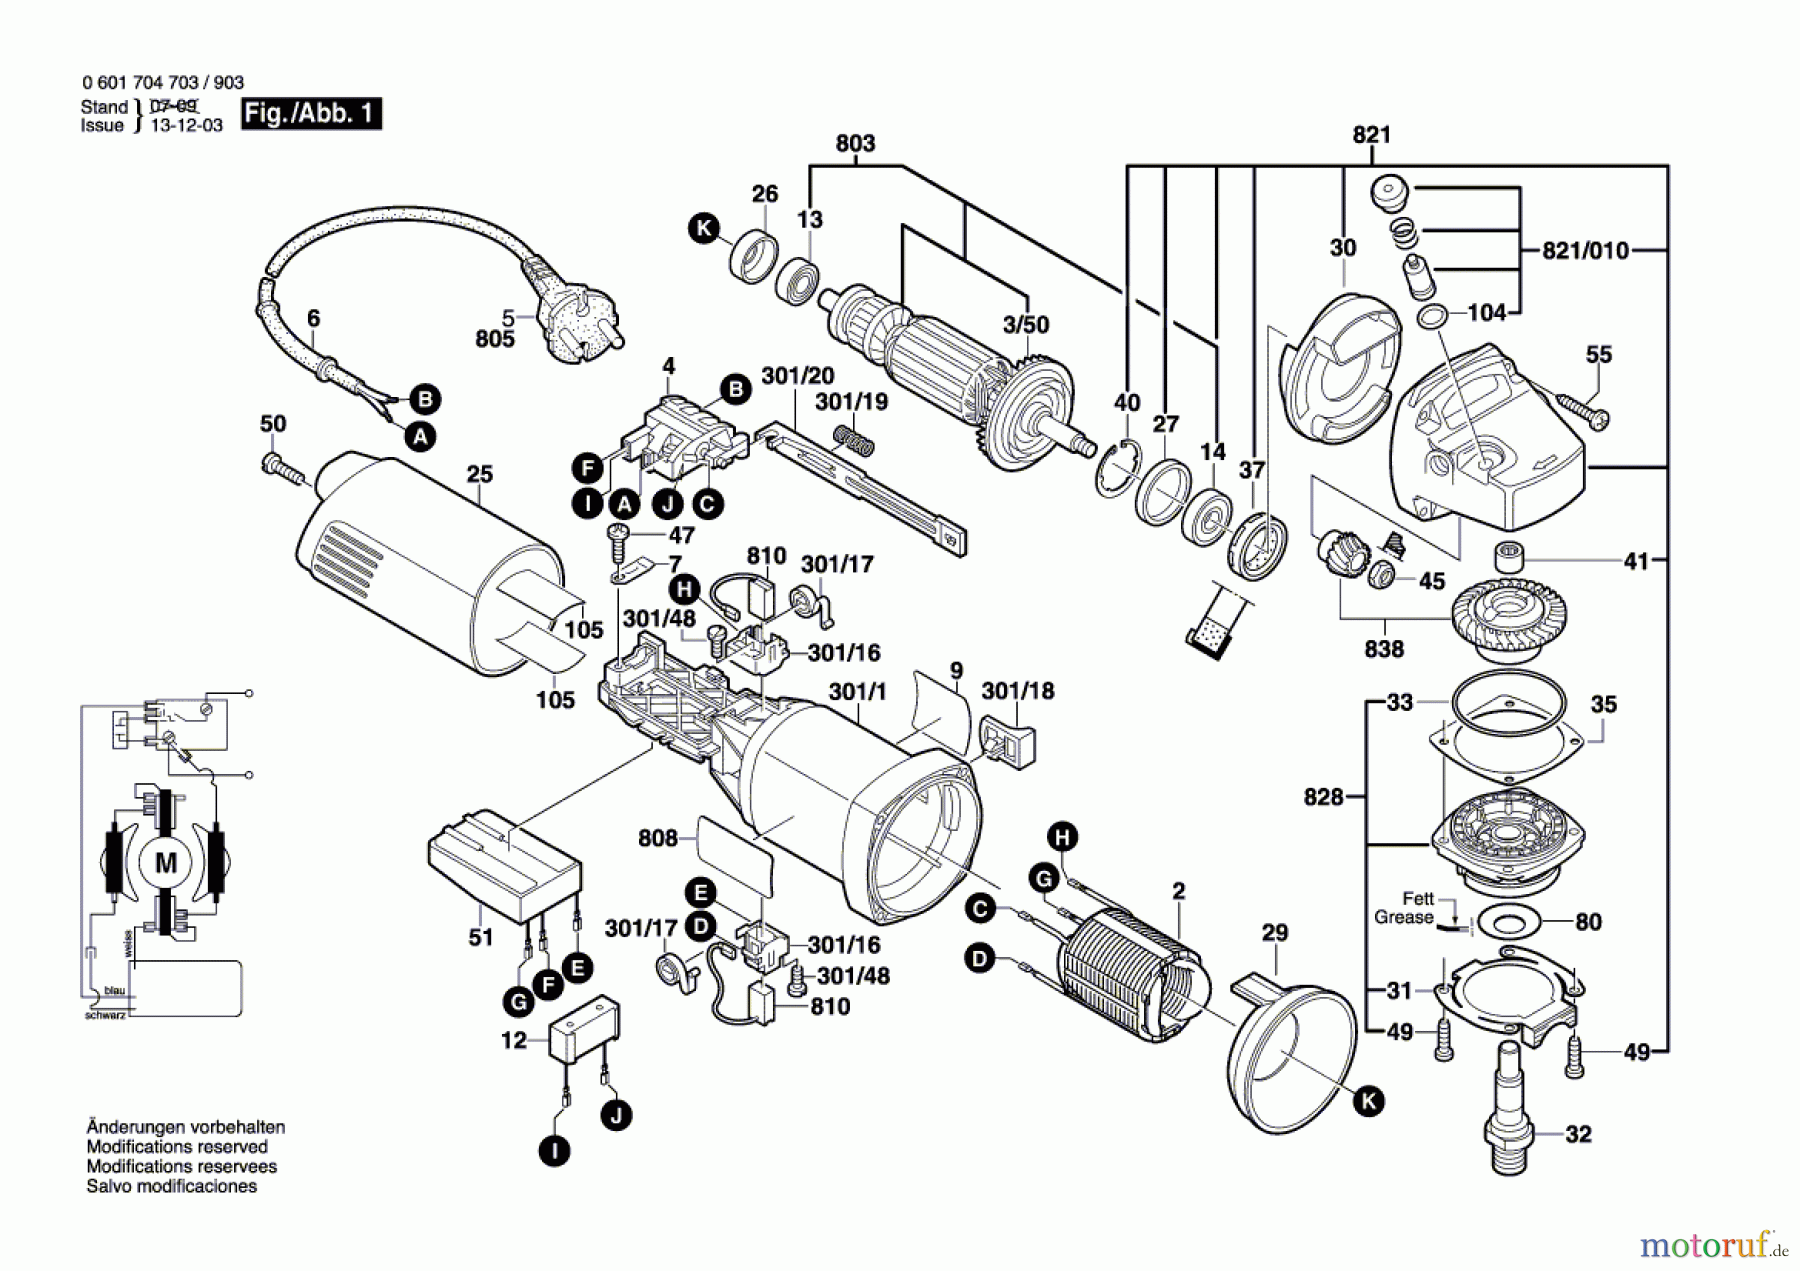  Bosch Werkzeug Winkelschleifer GWS 14-125 C Seite 1